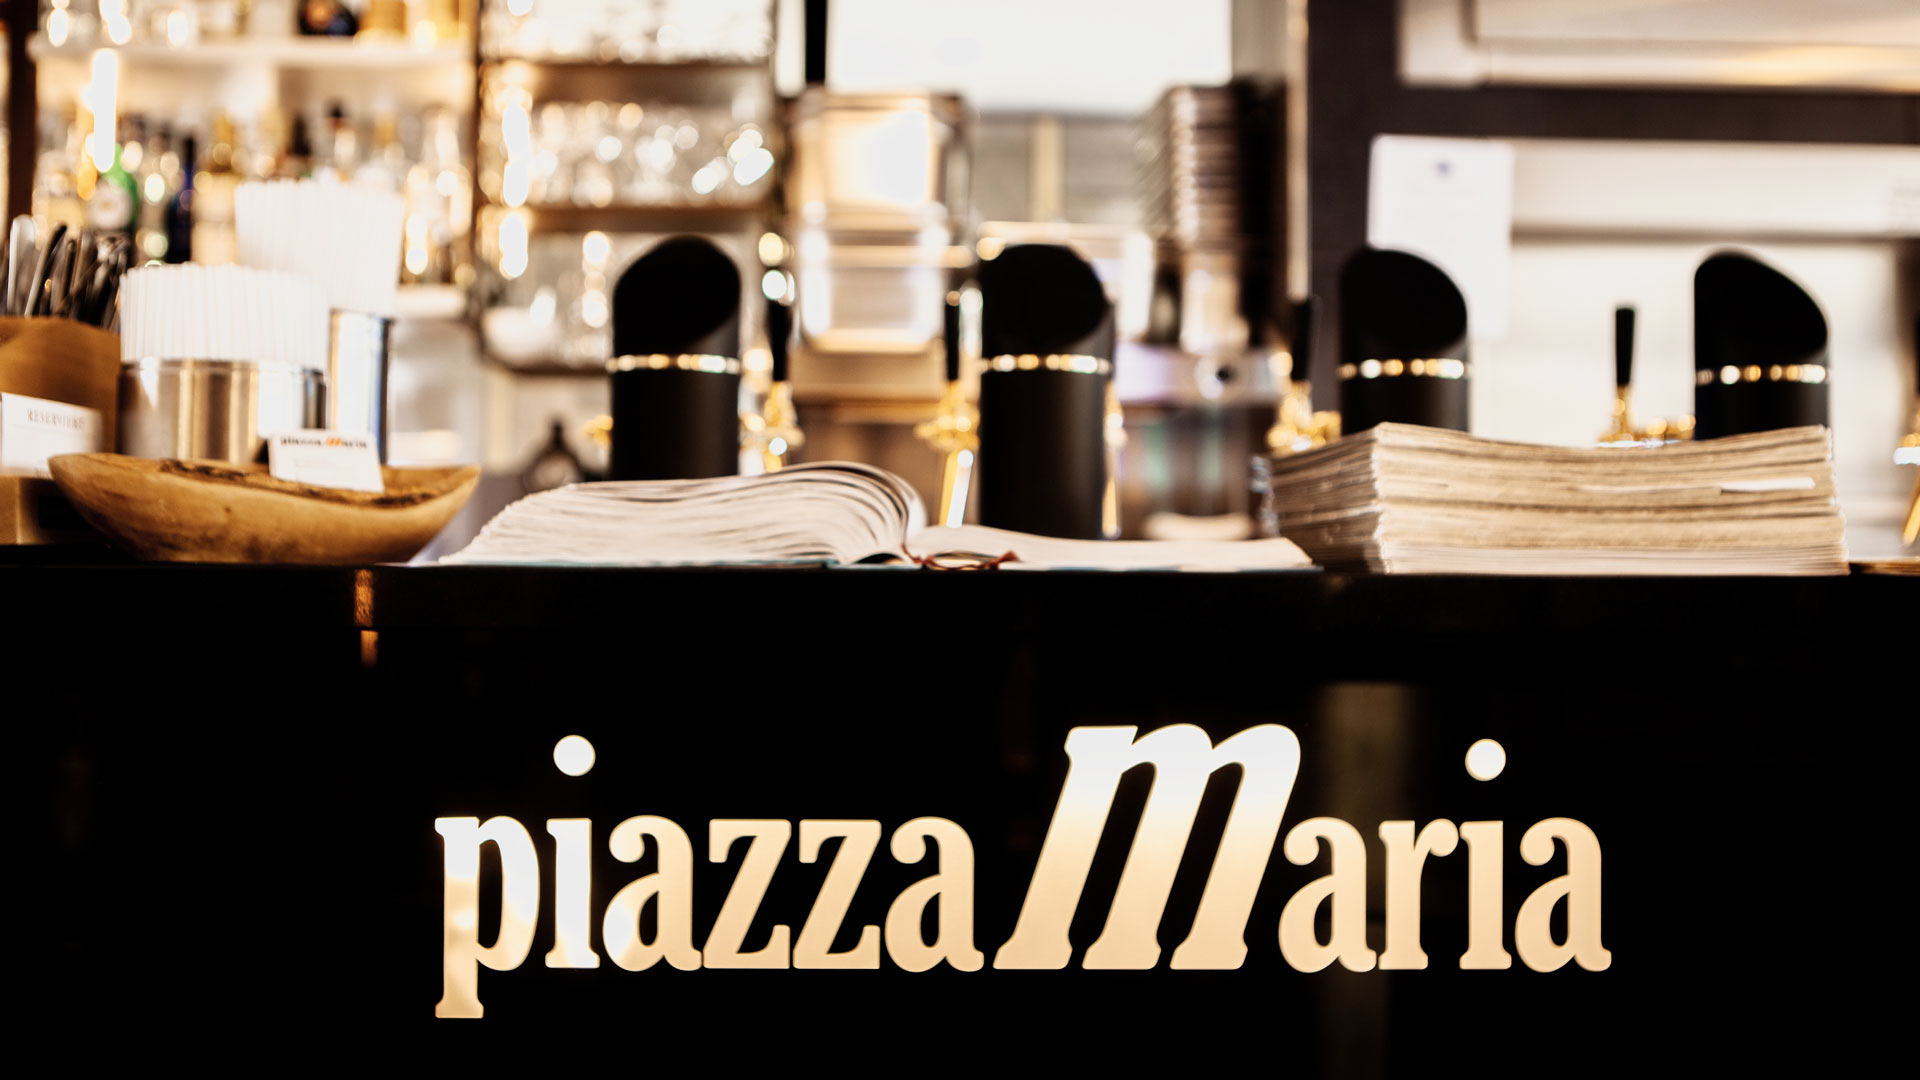 tresen ausschank logo restaurant muenchen marienplatz piazzamaria 01.01.2019